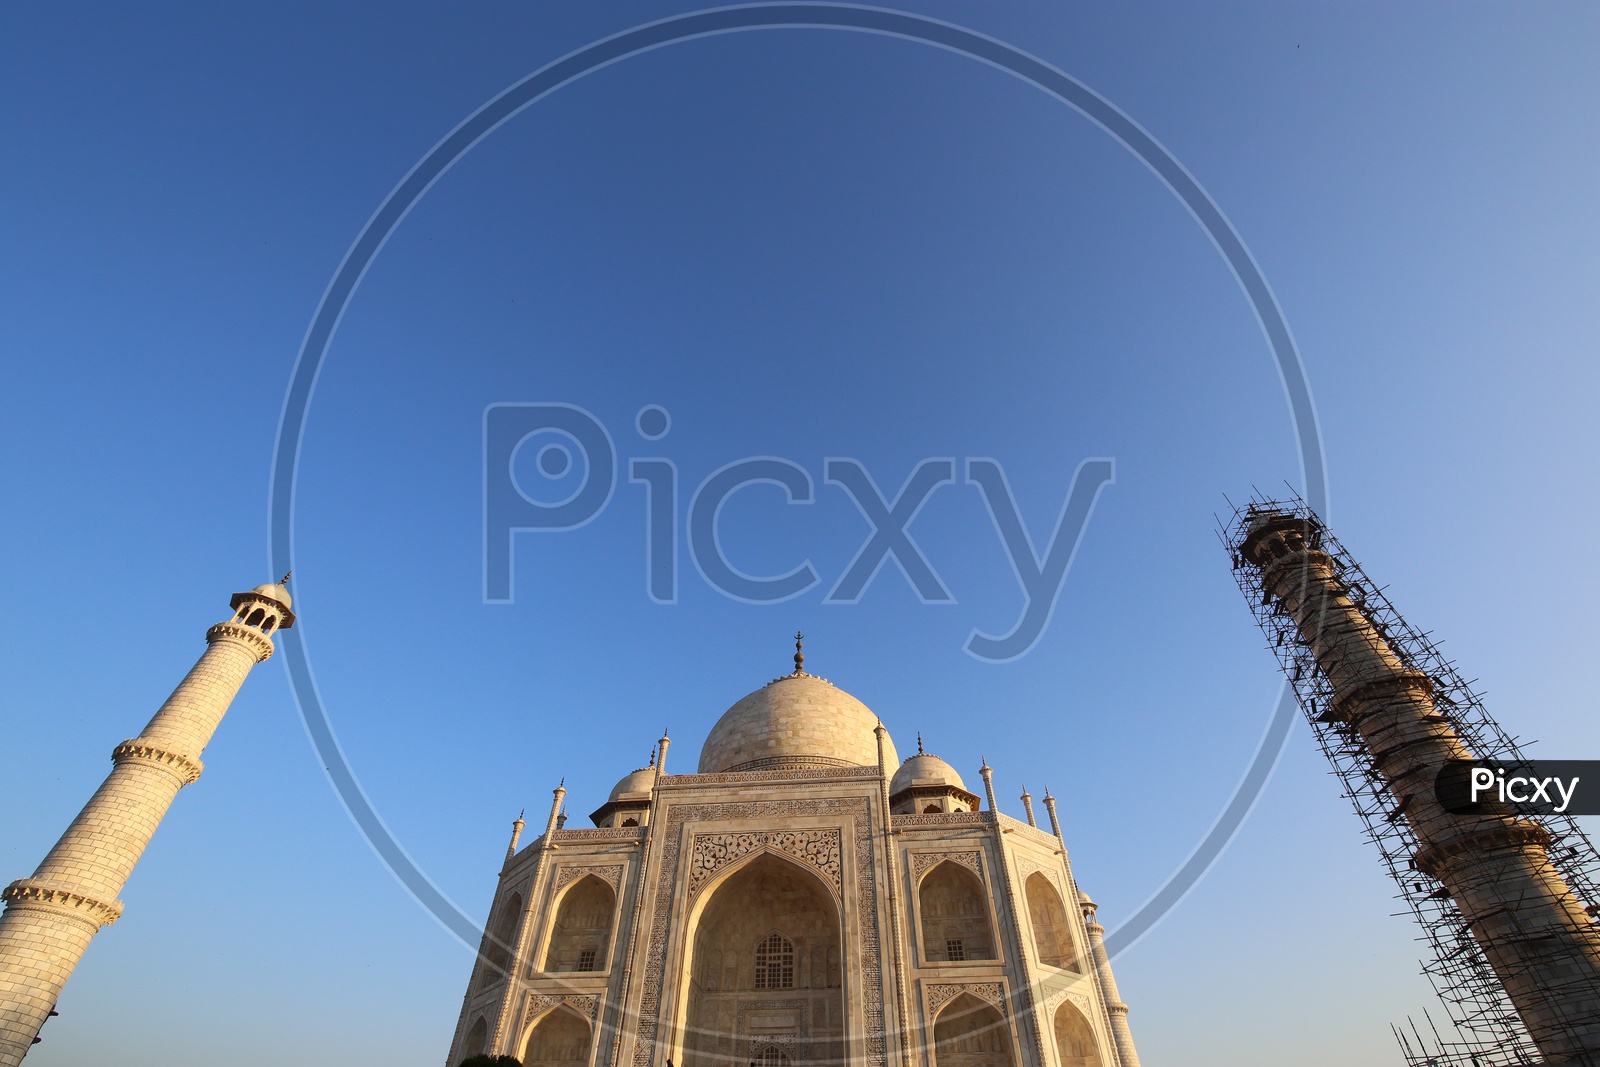 Beautiful Views of Taj Mahal